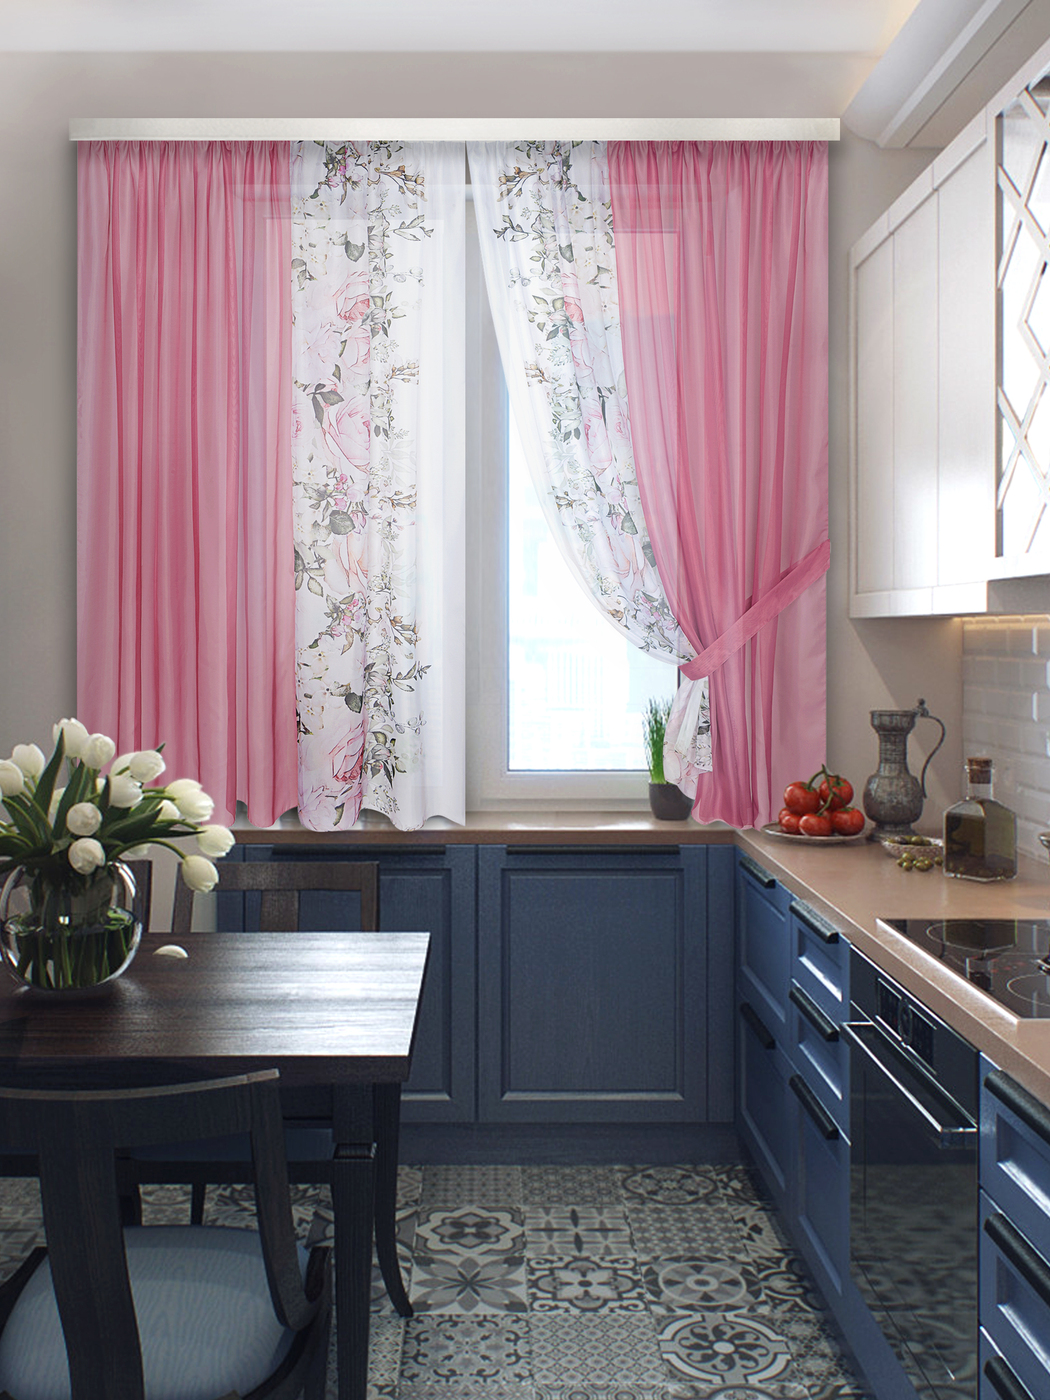 скомбинировать шторы двух цветов фото на кухне